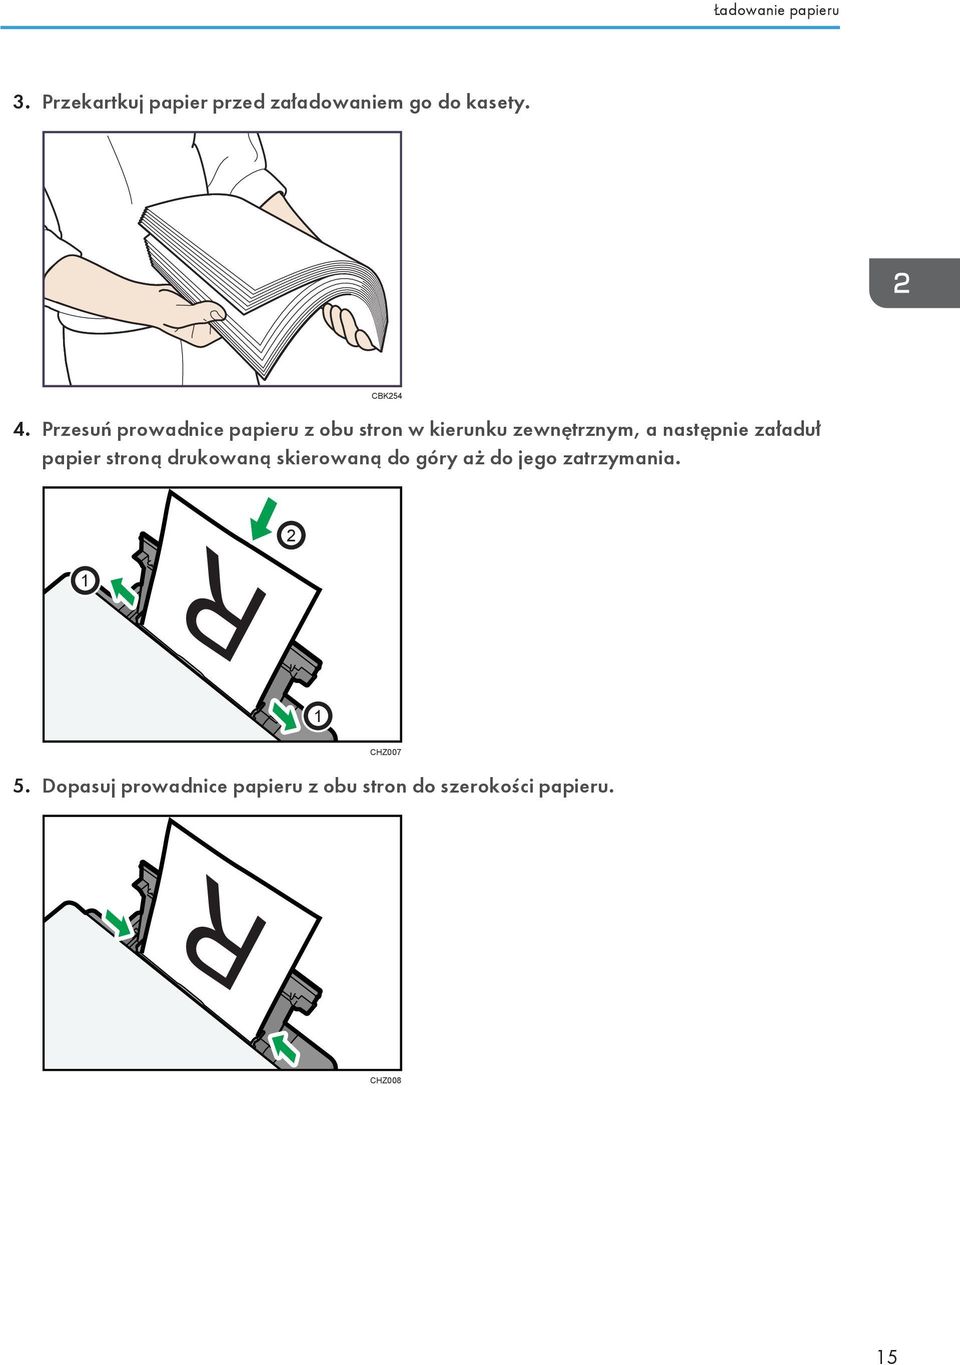 Przesuń prowadnice papieru z obu stron w kierunku zewnętrznym, a następnie